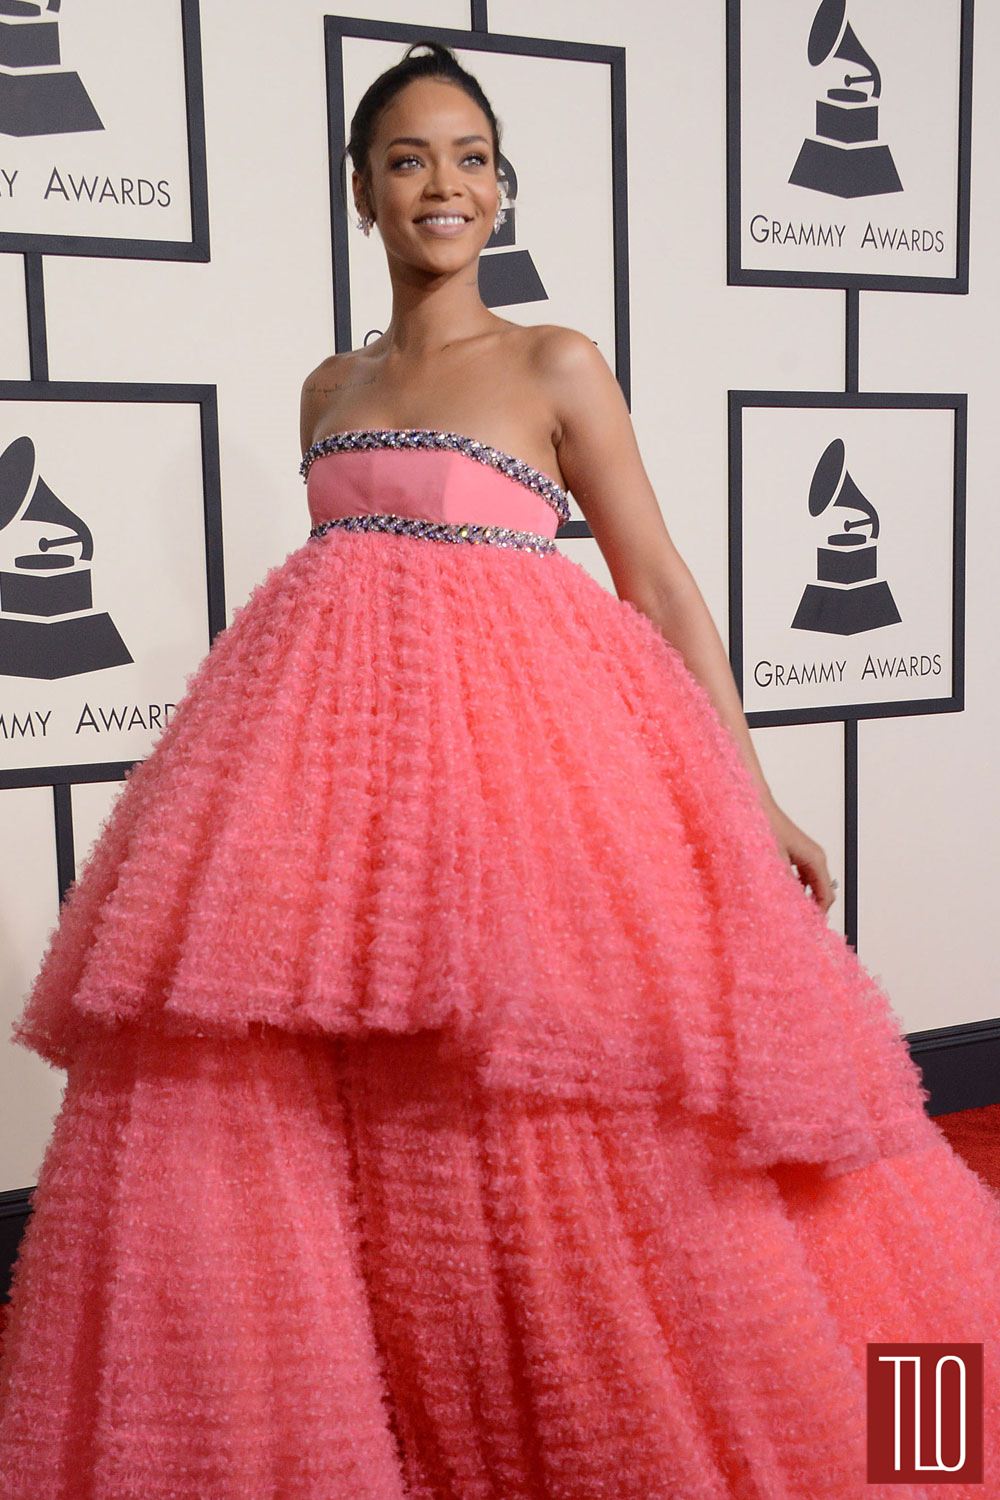 Rihanna-2015-Grammy-Awards-Red-Carpet-Fashion-Giambattista-Valli-Couture-Tom-Lorenzo-Site-TLO (1)